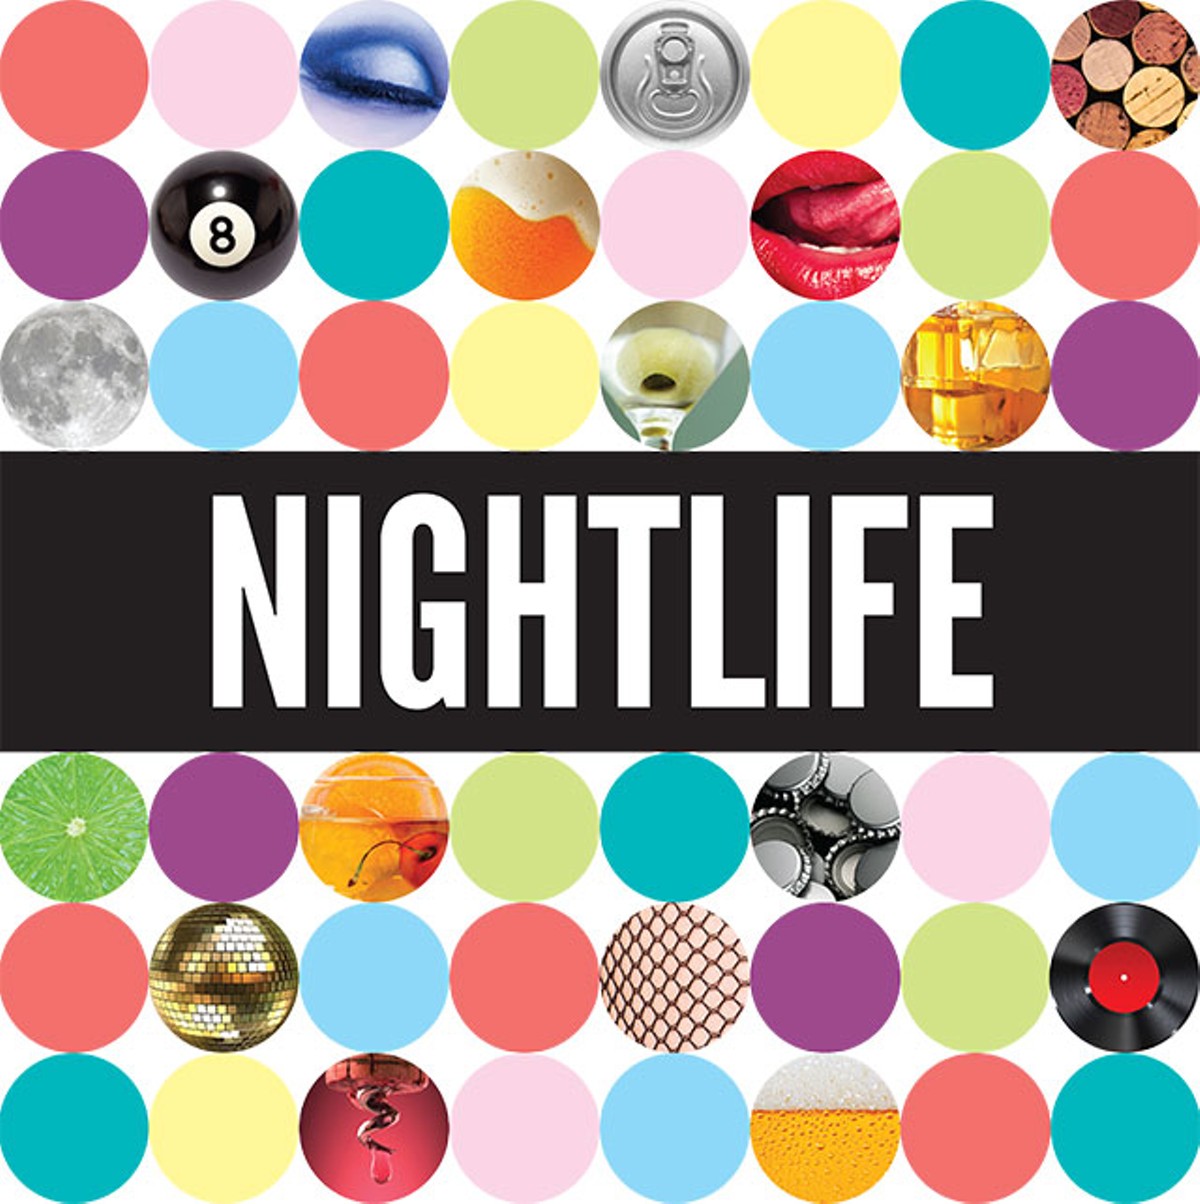 Best of SA 2013 - Nightlife